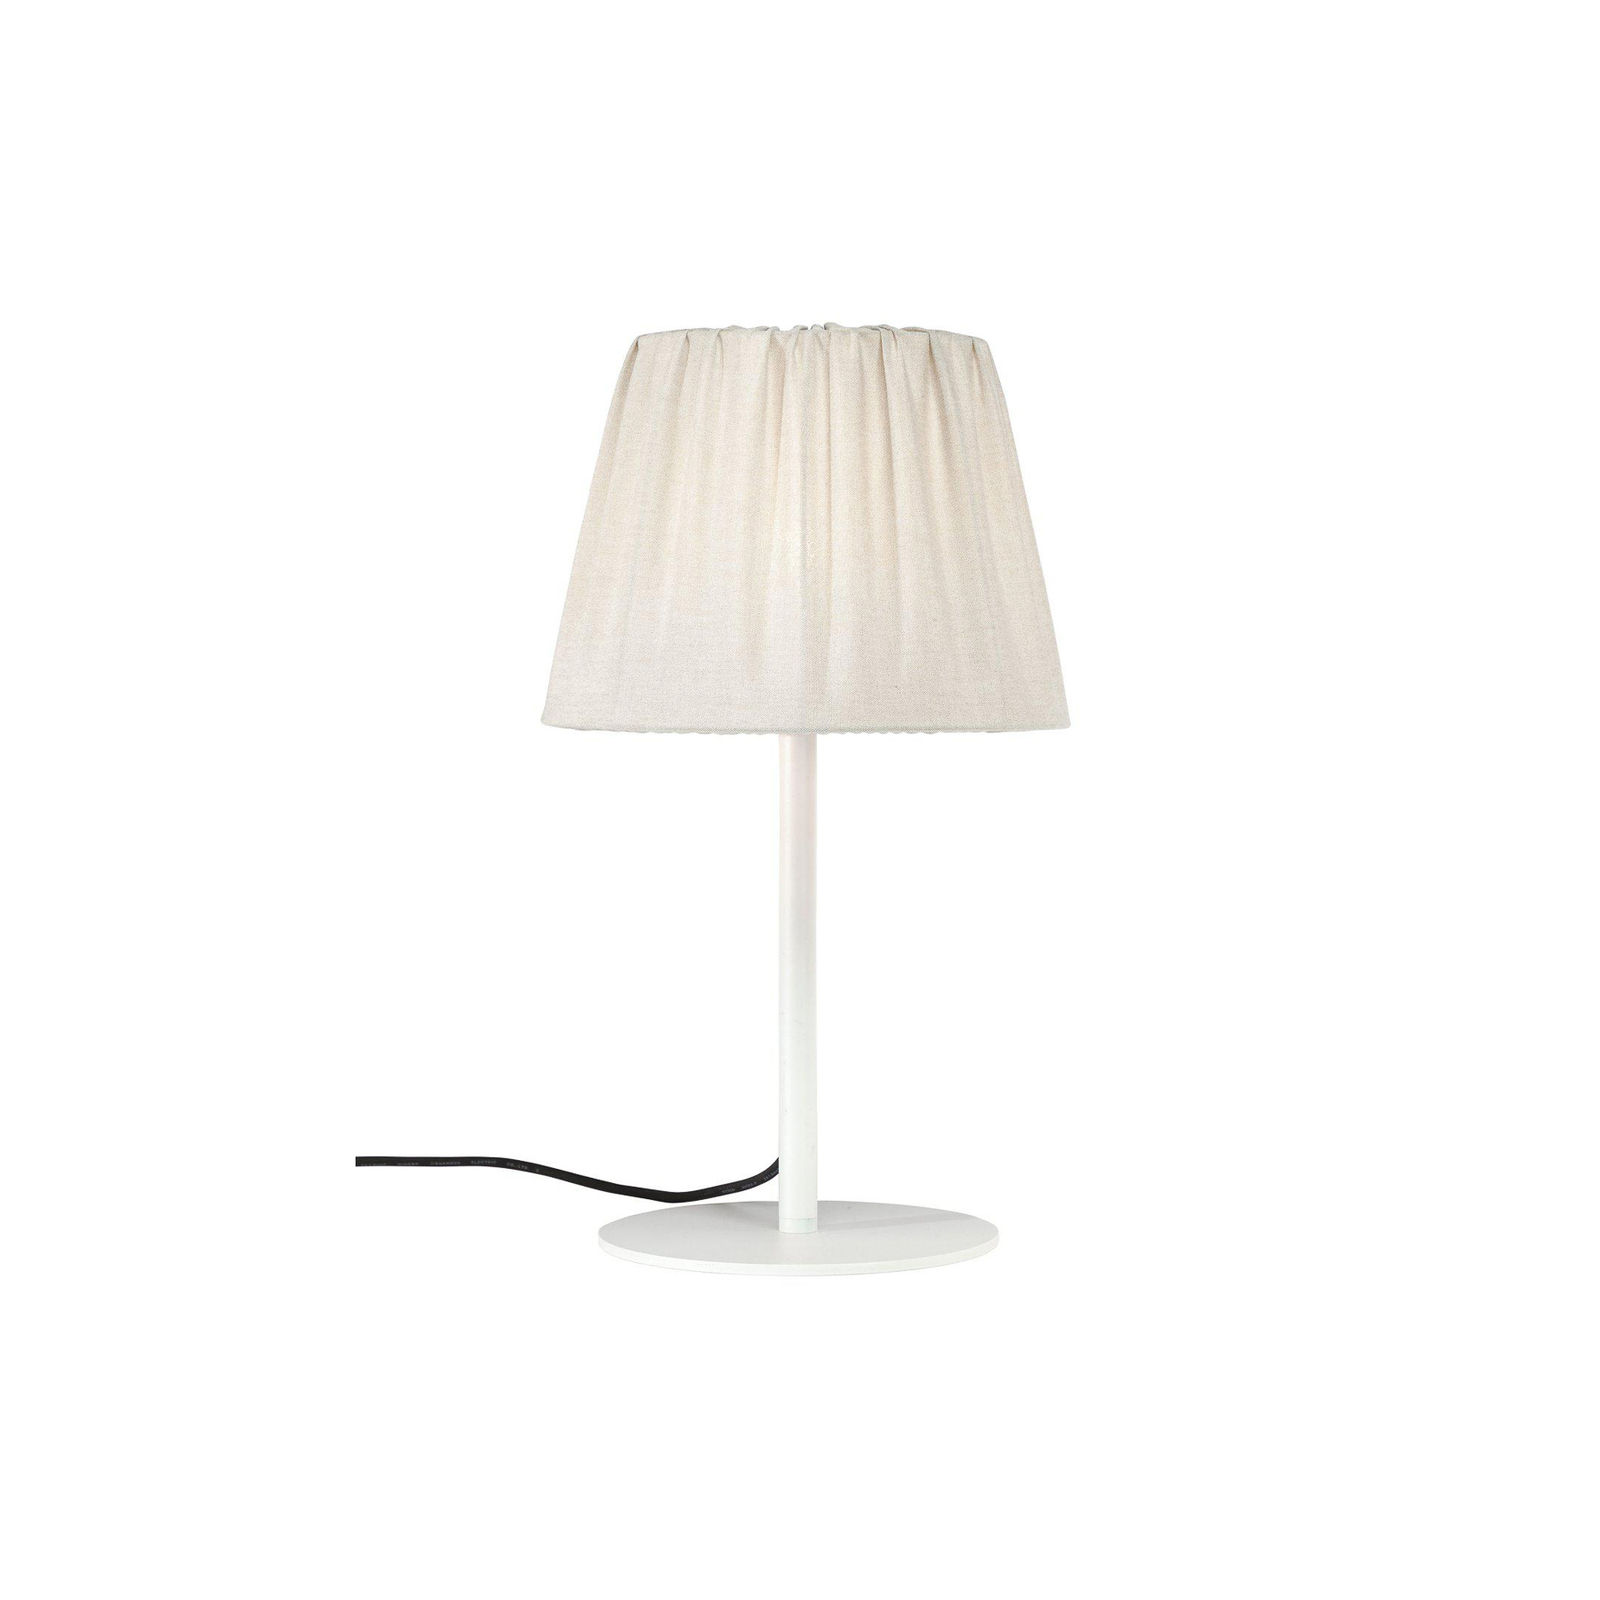 PR Home udendørs bordlampe Agnar, hvid/beige, 57 cm